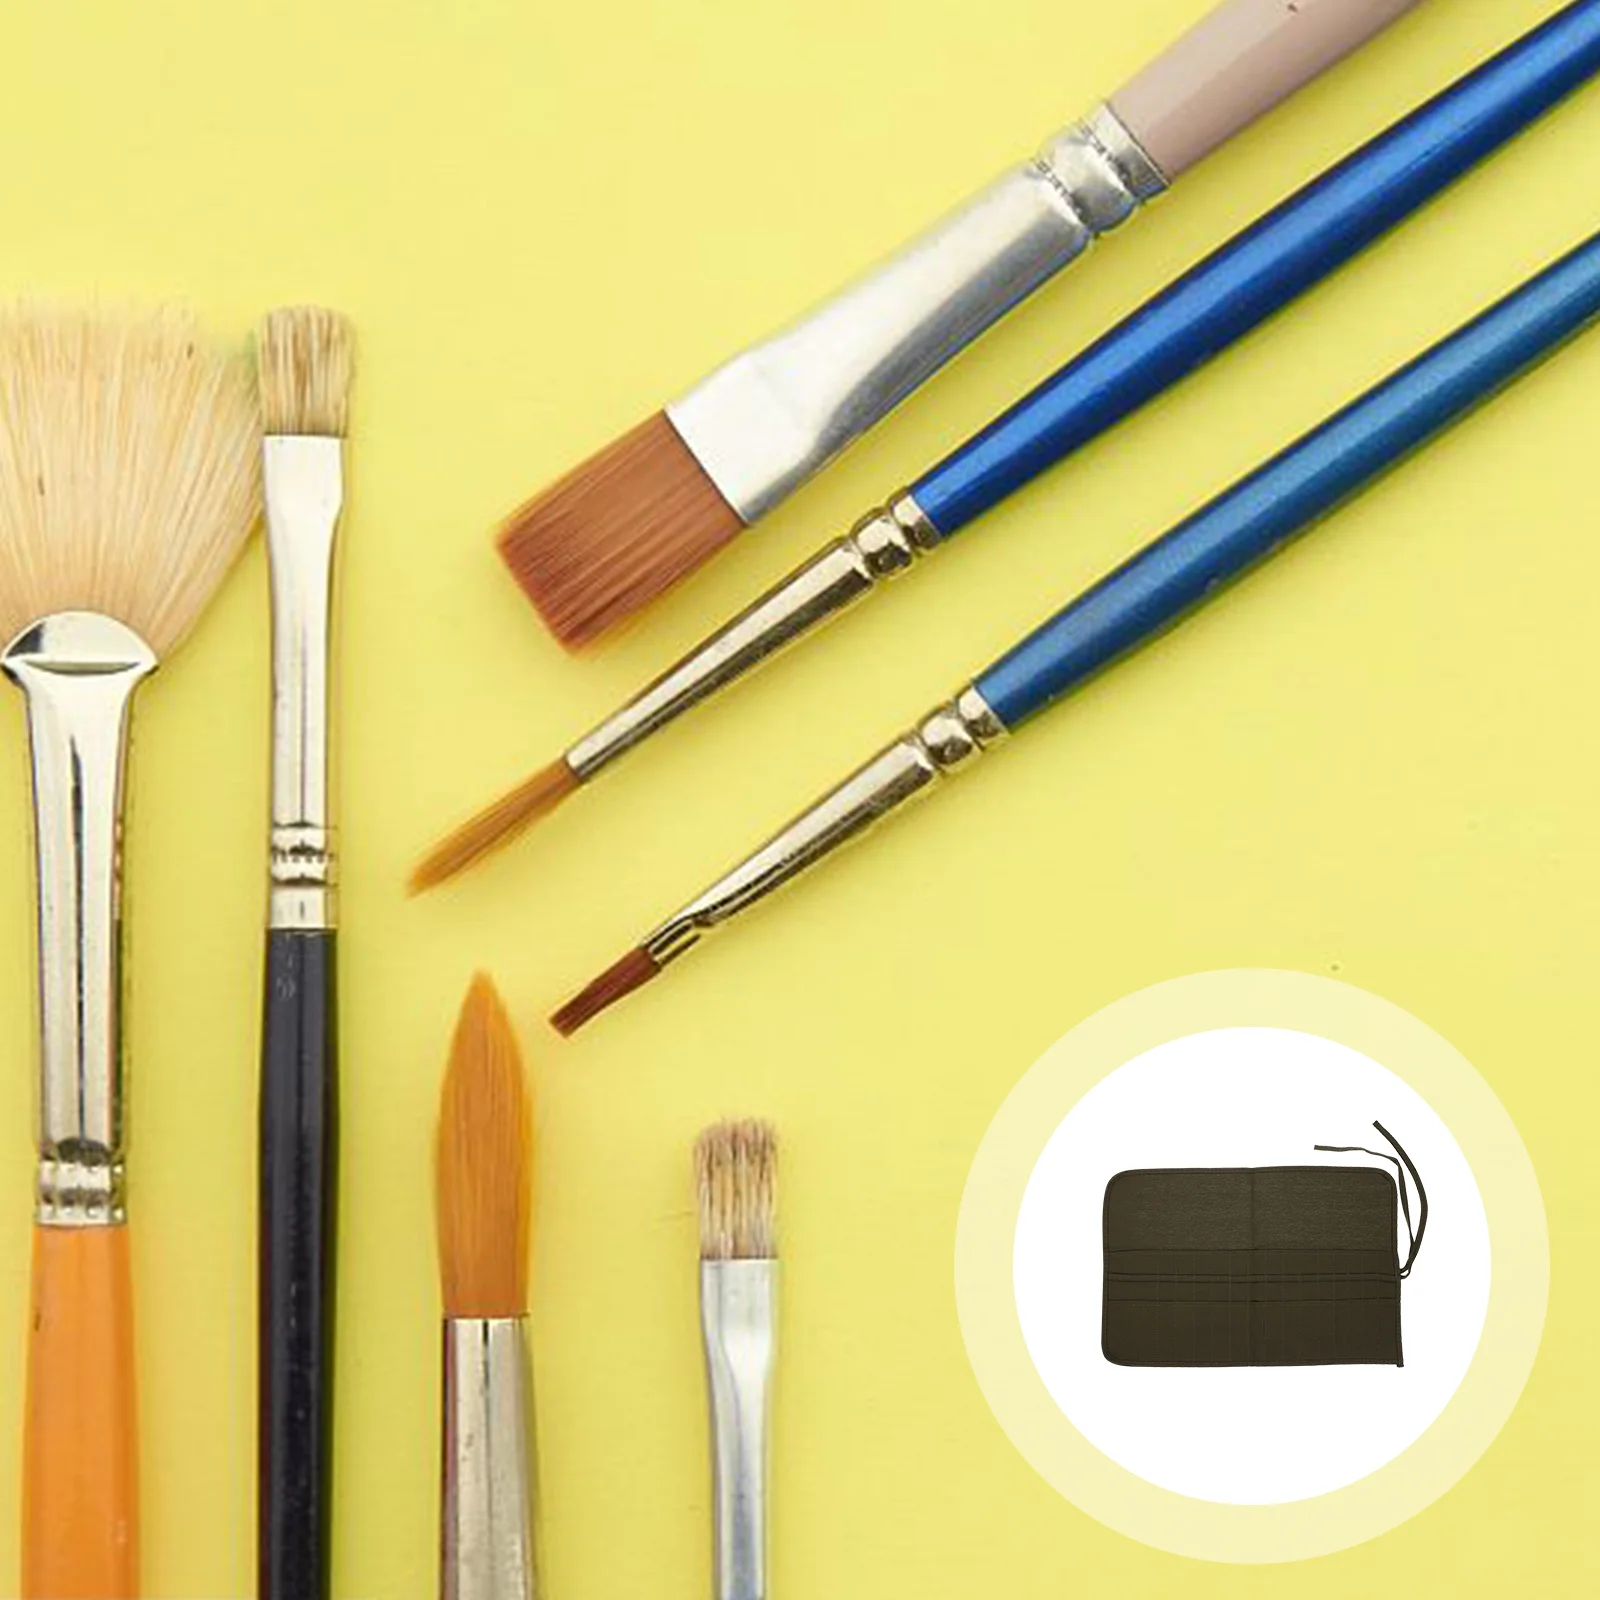 

30 Pen Curtains Bag Paint Brush Case Paintbrush Organizer Watercolor Holder Makeup